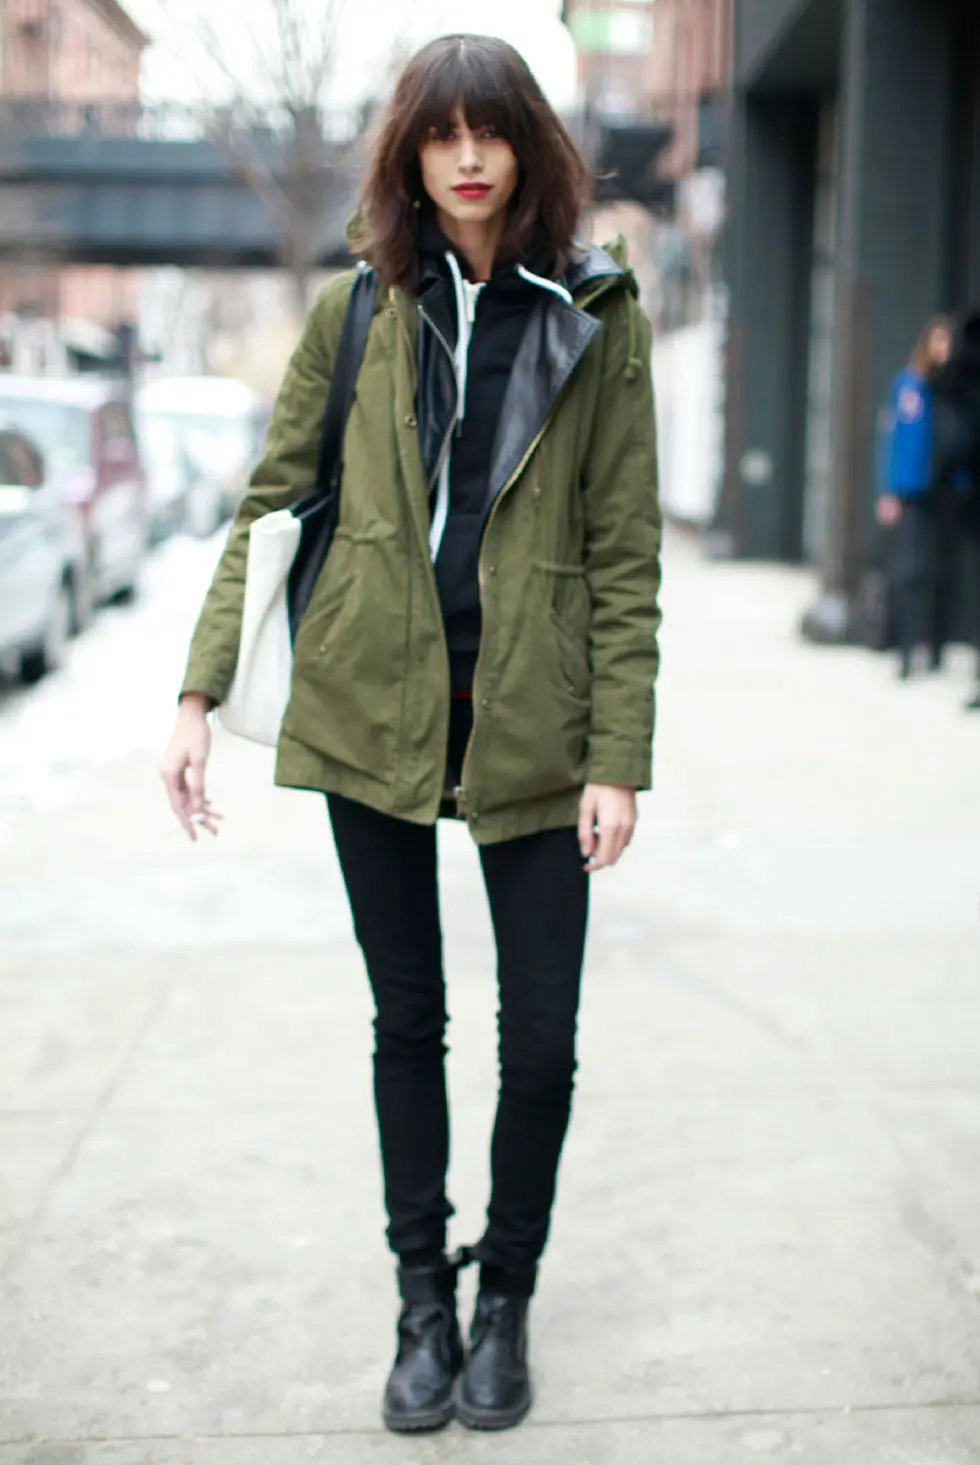 Jacket parka merupakan outer yang bisa menghangatkan tubuh dan membuat penampilan stylish. (Image: marieclaire.com)